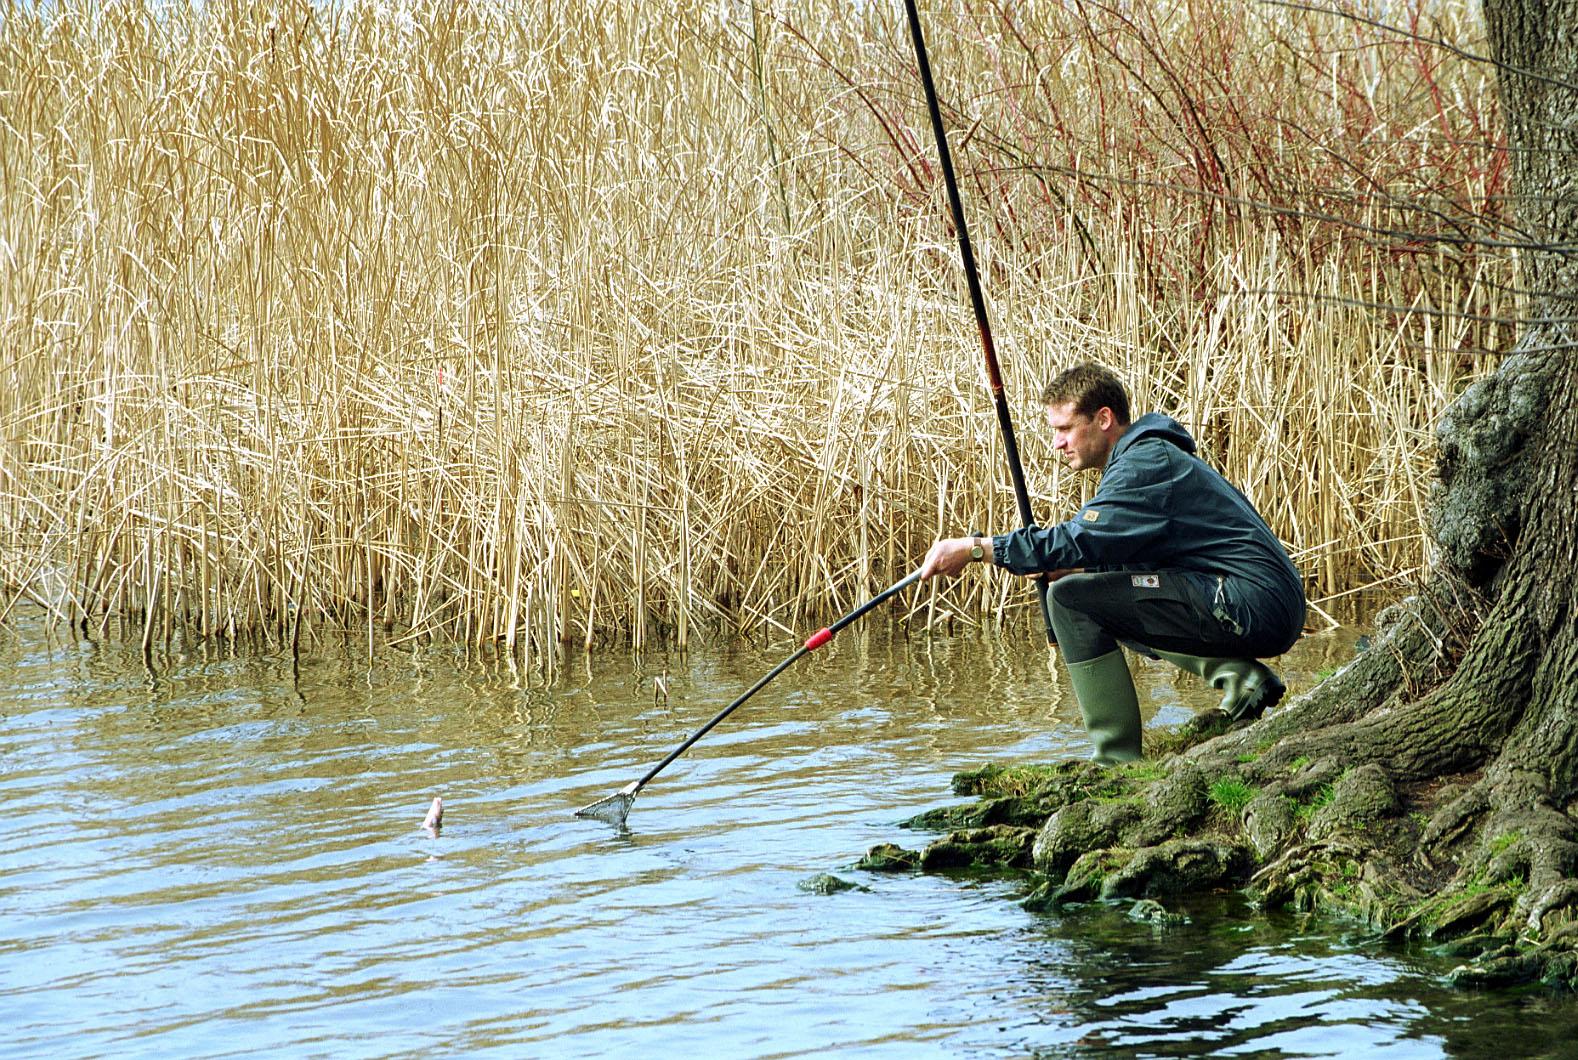 IfB-staff F. Weichler fishing